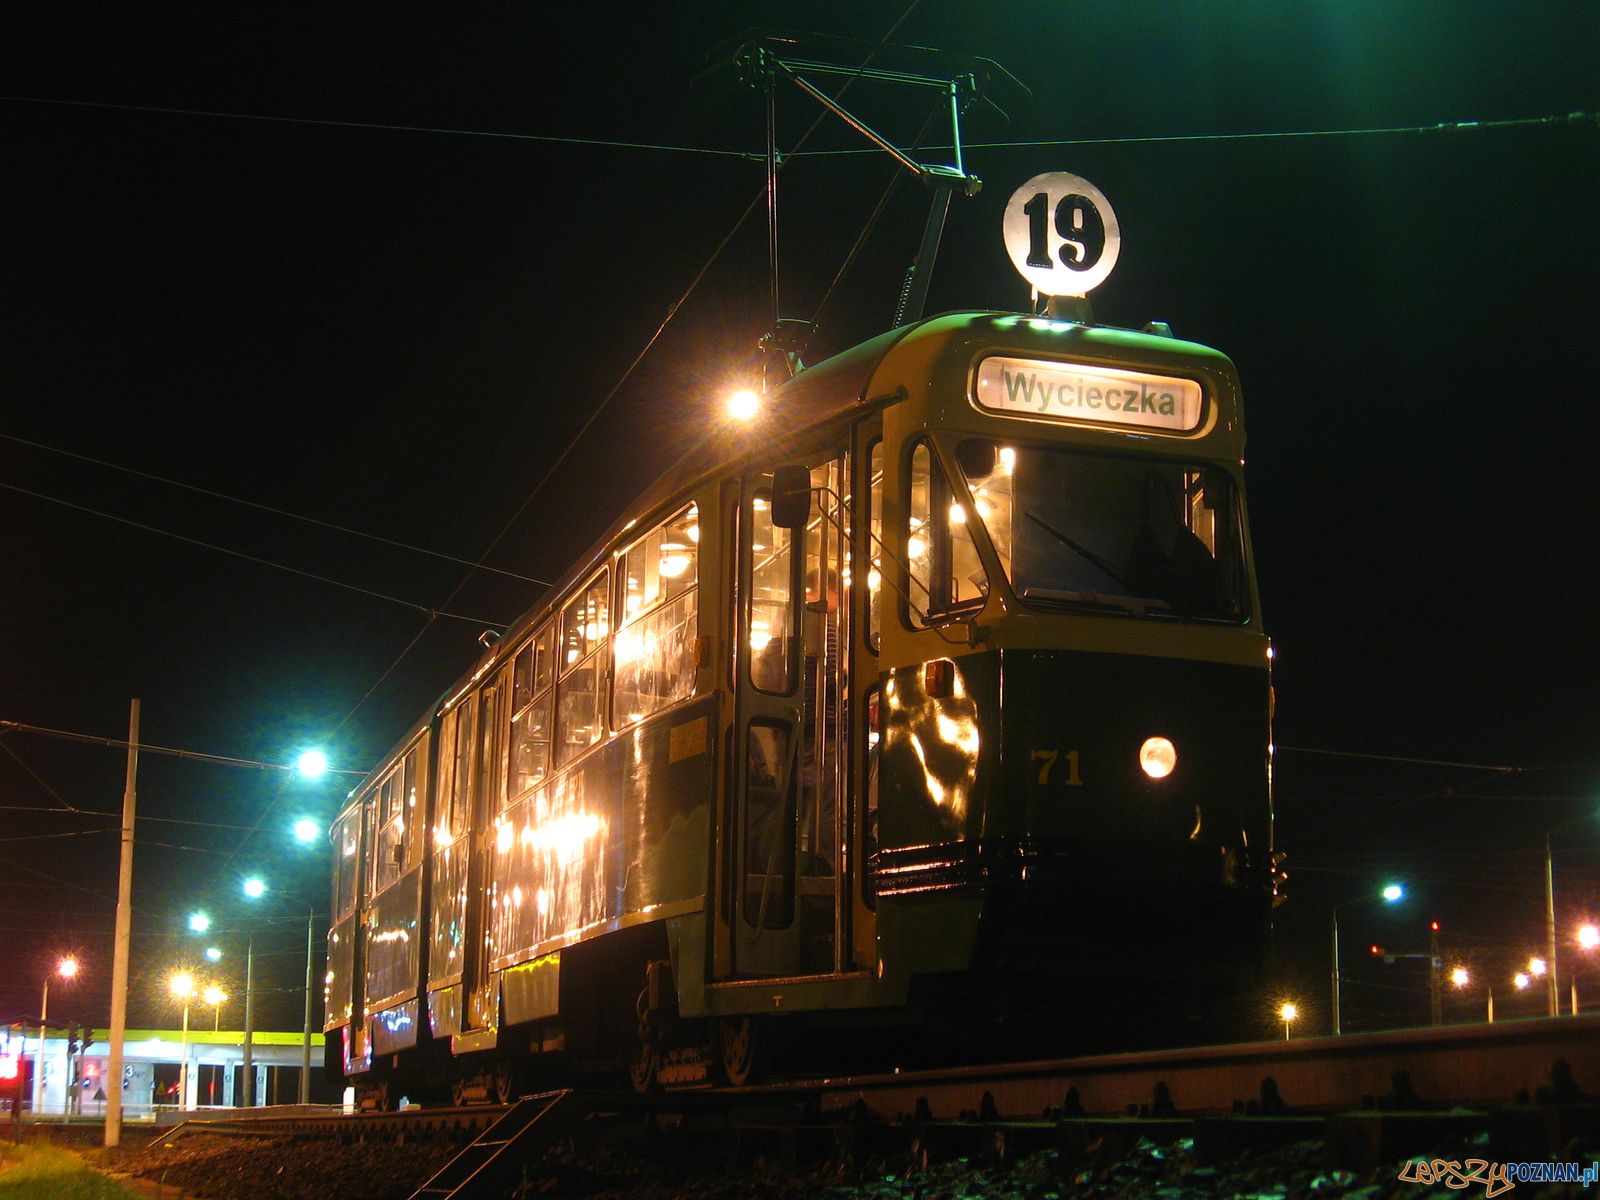 Nocny tramwaj- nocną bimbą po mieście  Foto: Błażej_Brzycki / KMPS